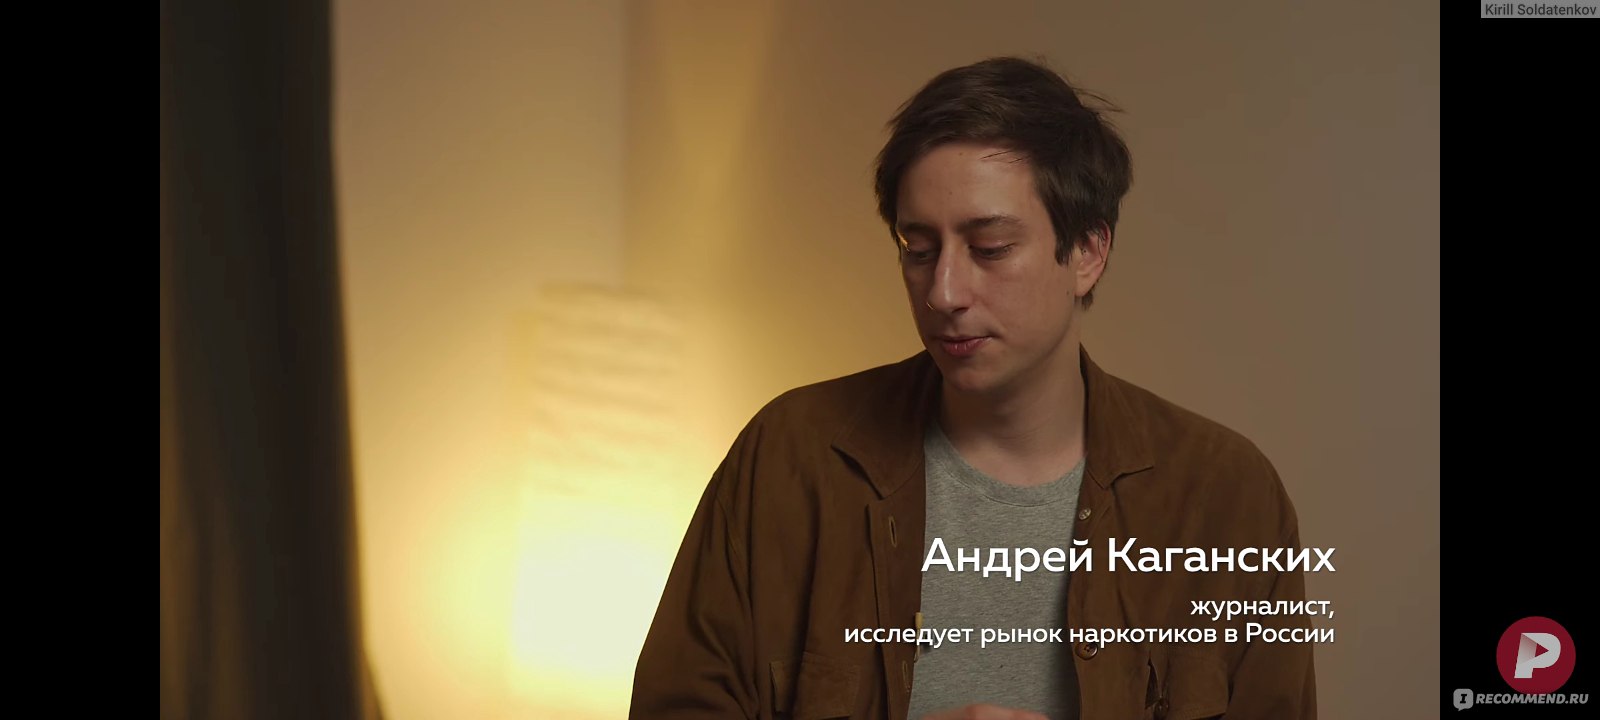 Документальный фильм про наркотики россия каковы основные причины распространения алкоголизма и наркотиков